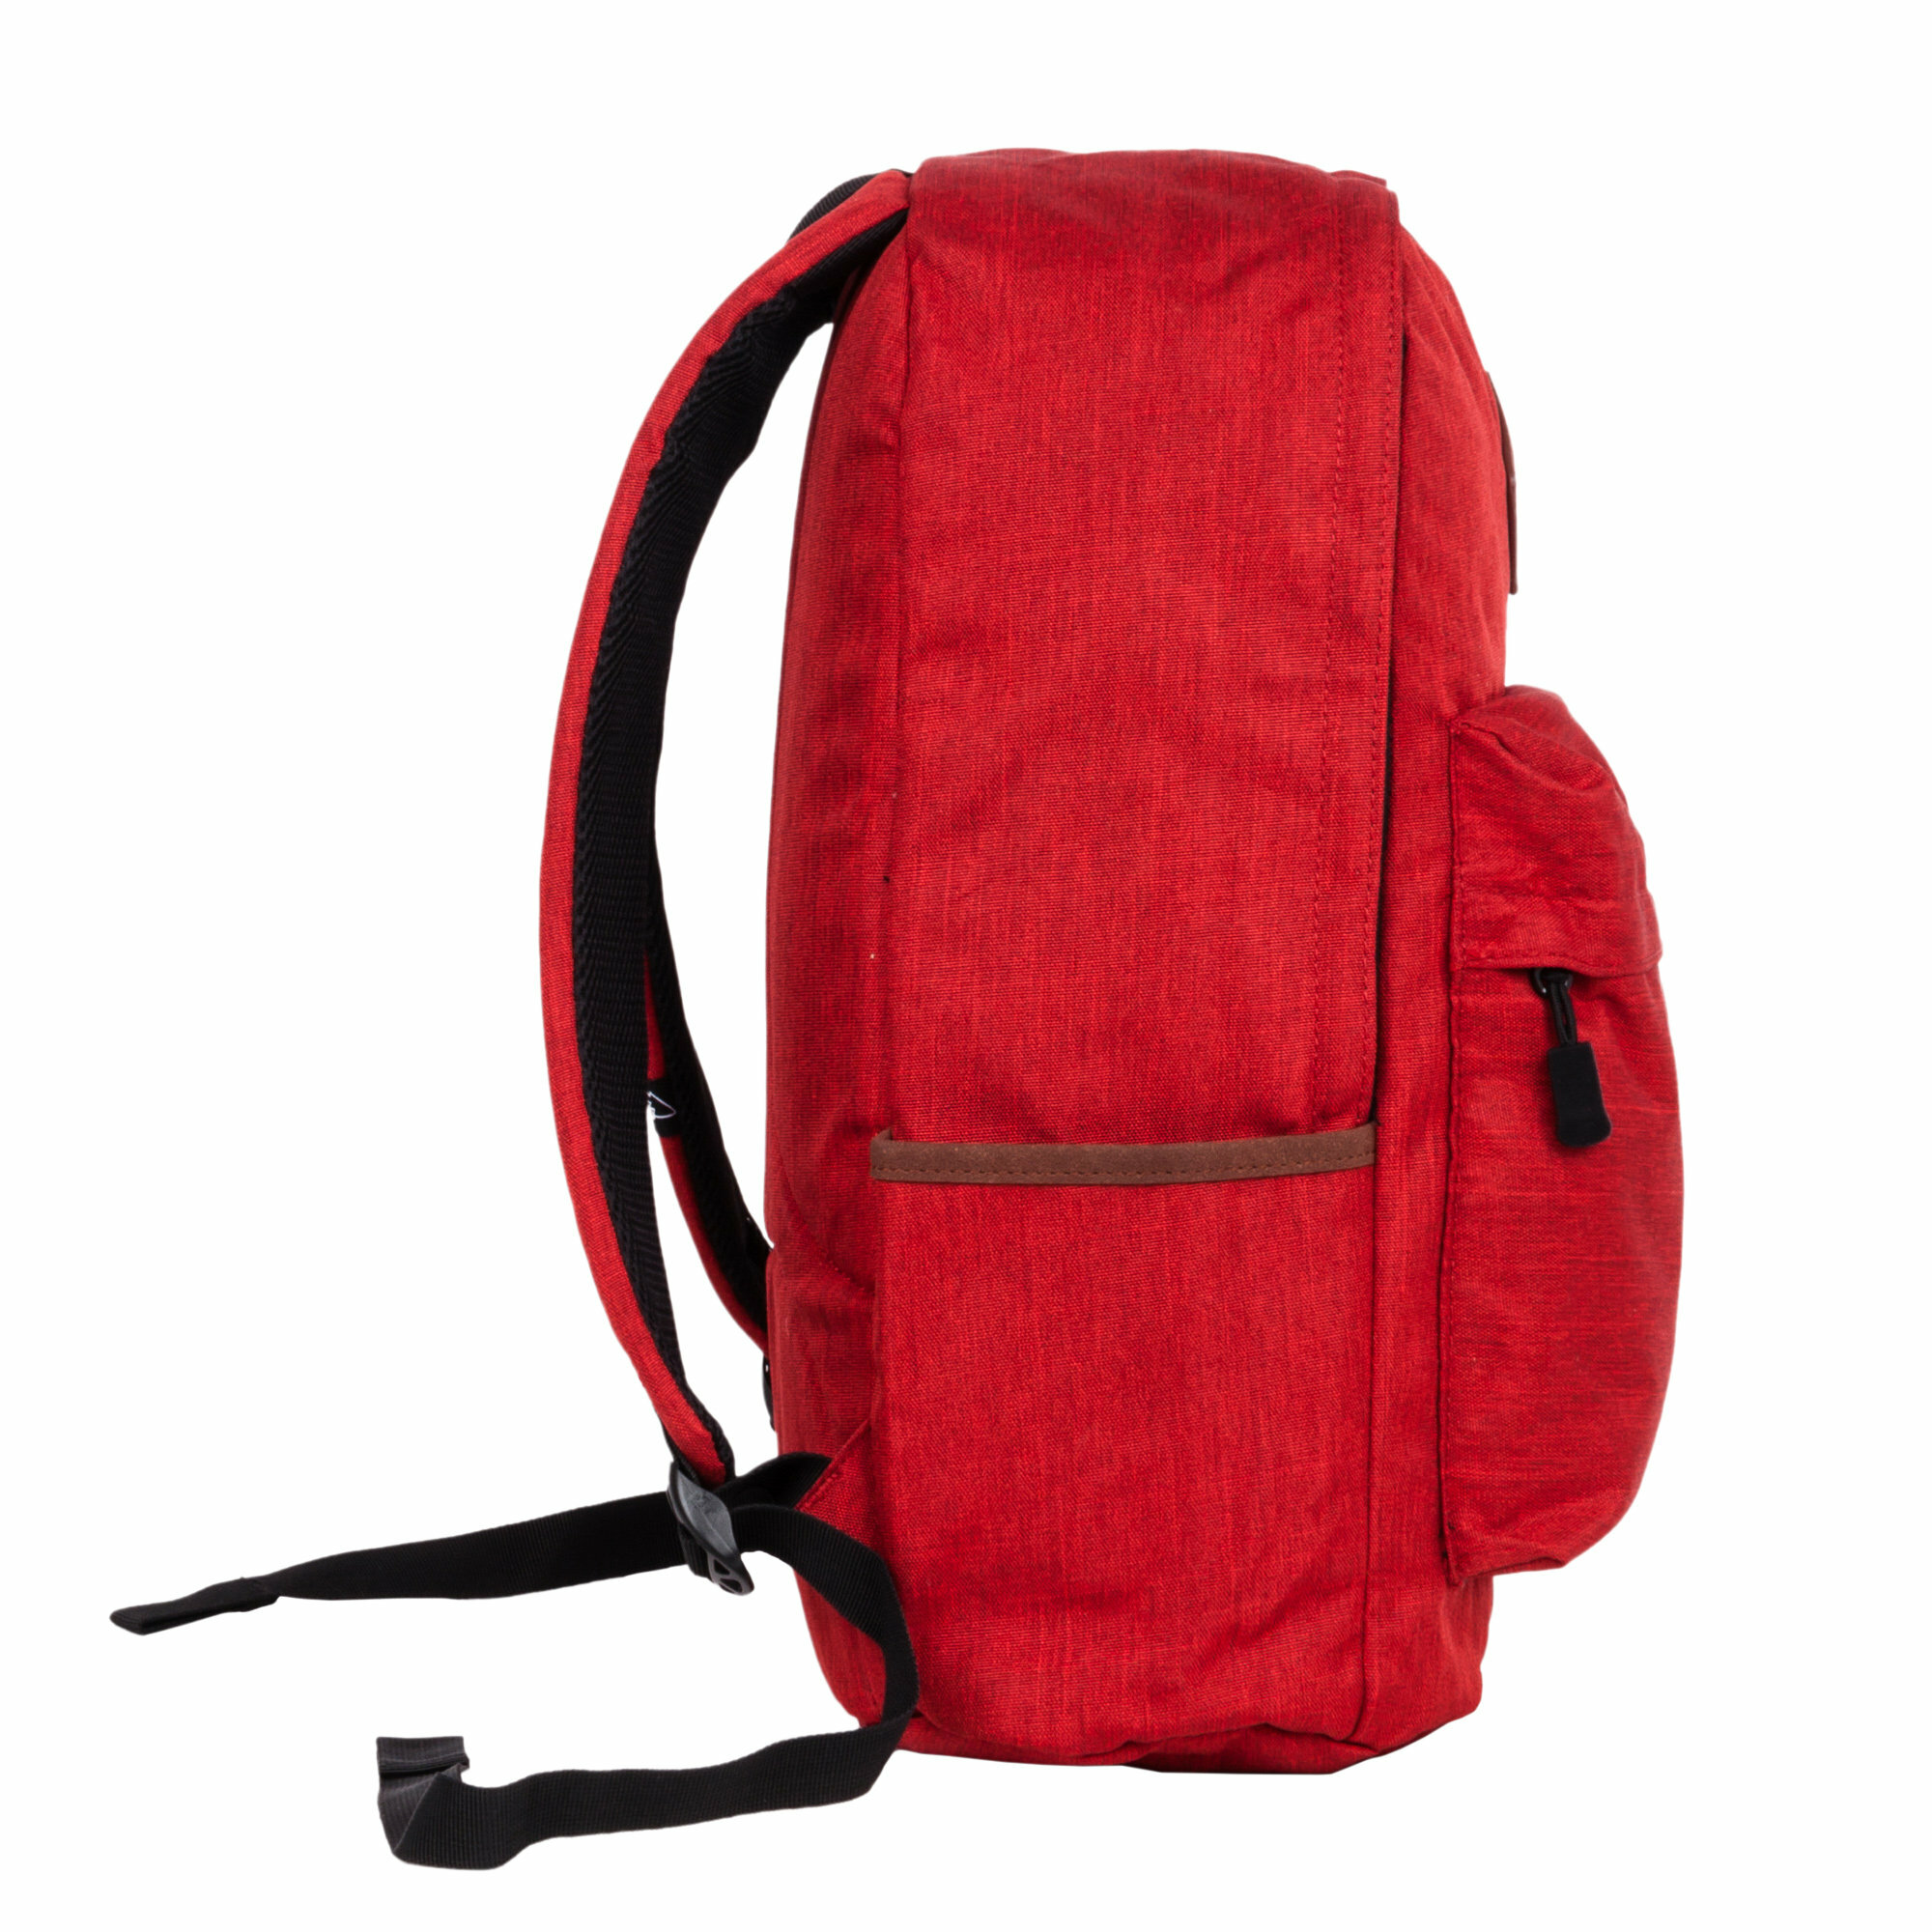 Рюкзак Polar 16009 (16009 БОРДОВЫЙ) 30x45x15см 20.5л. 0.47кг. полиэстер/нейлон красный - фото №2